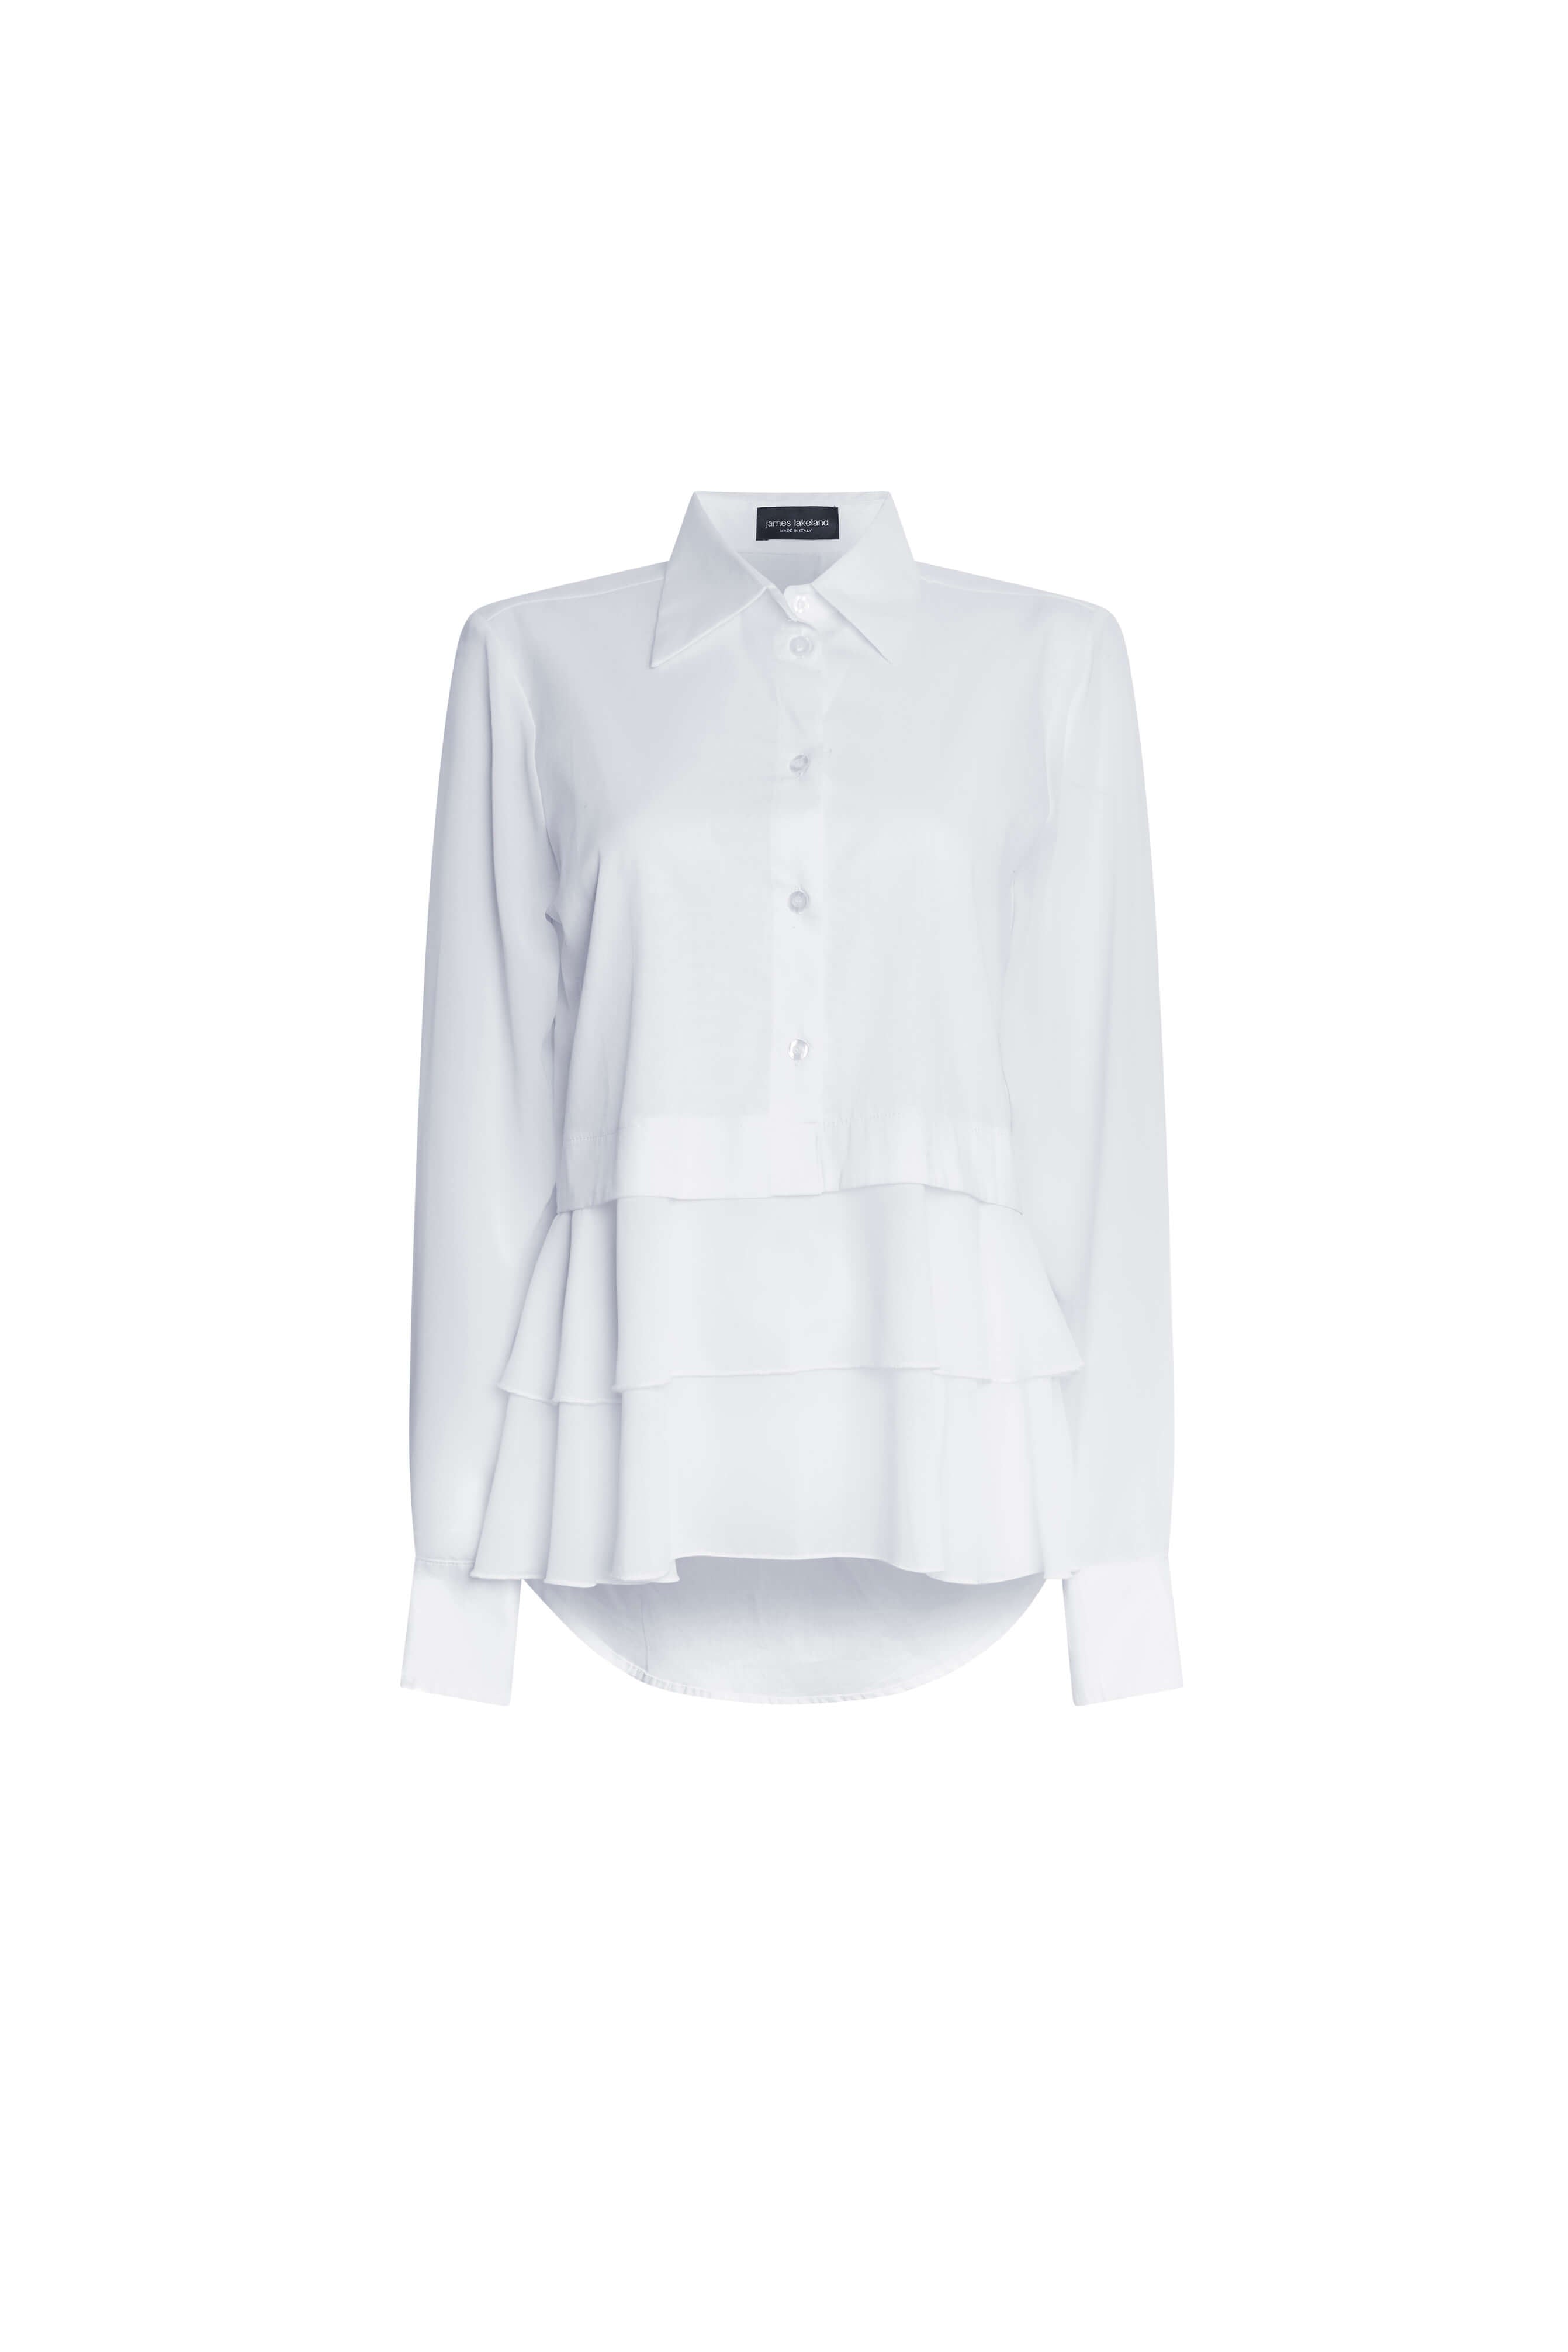 James Lakeland Women's Sheer Sleeve Ruffle Shirt White